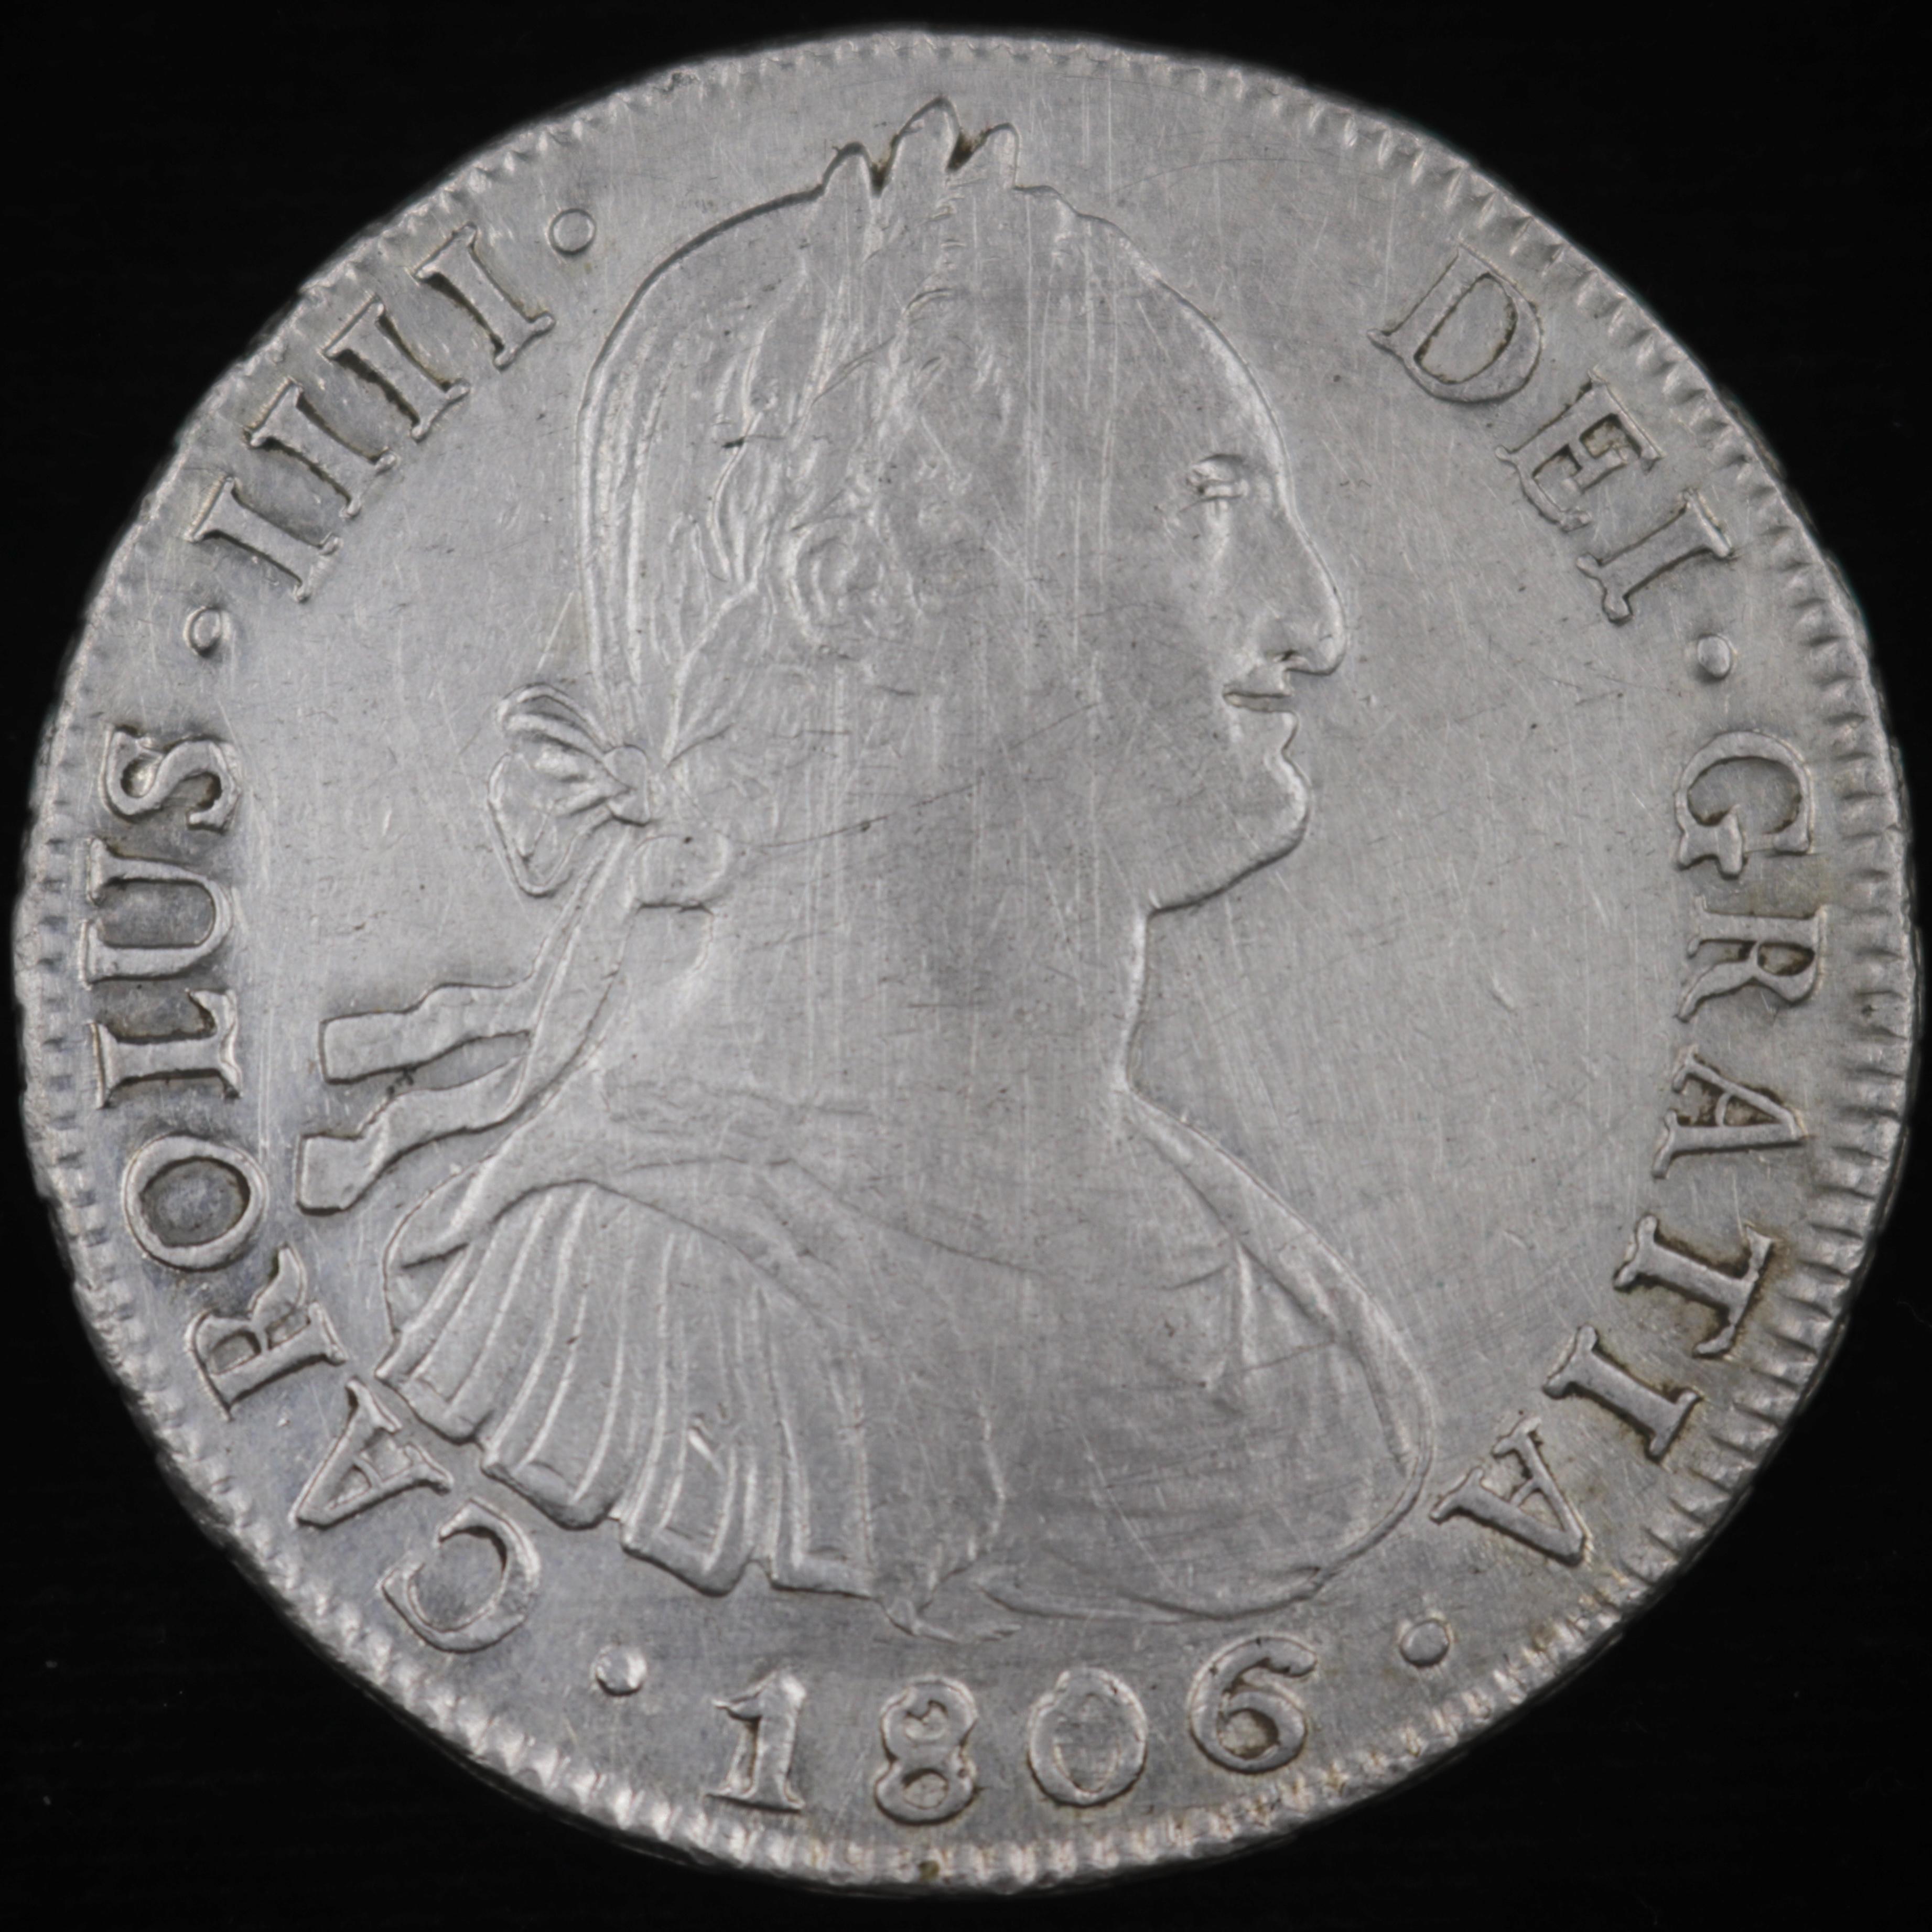 1806 PTS Bolivia silver 8 real